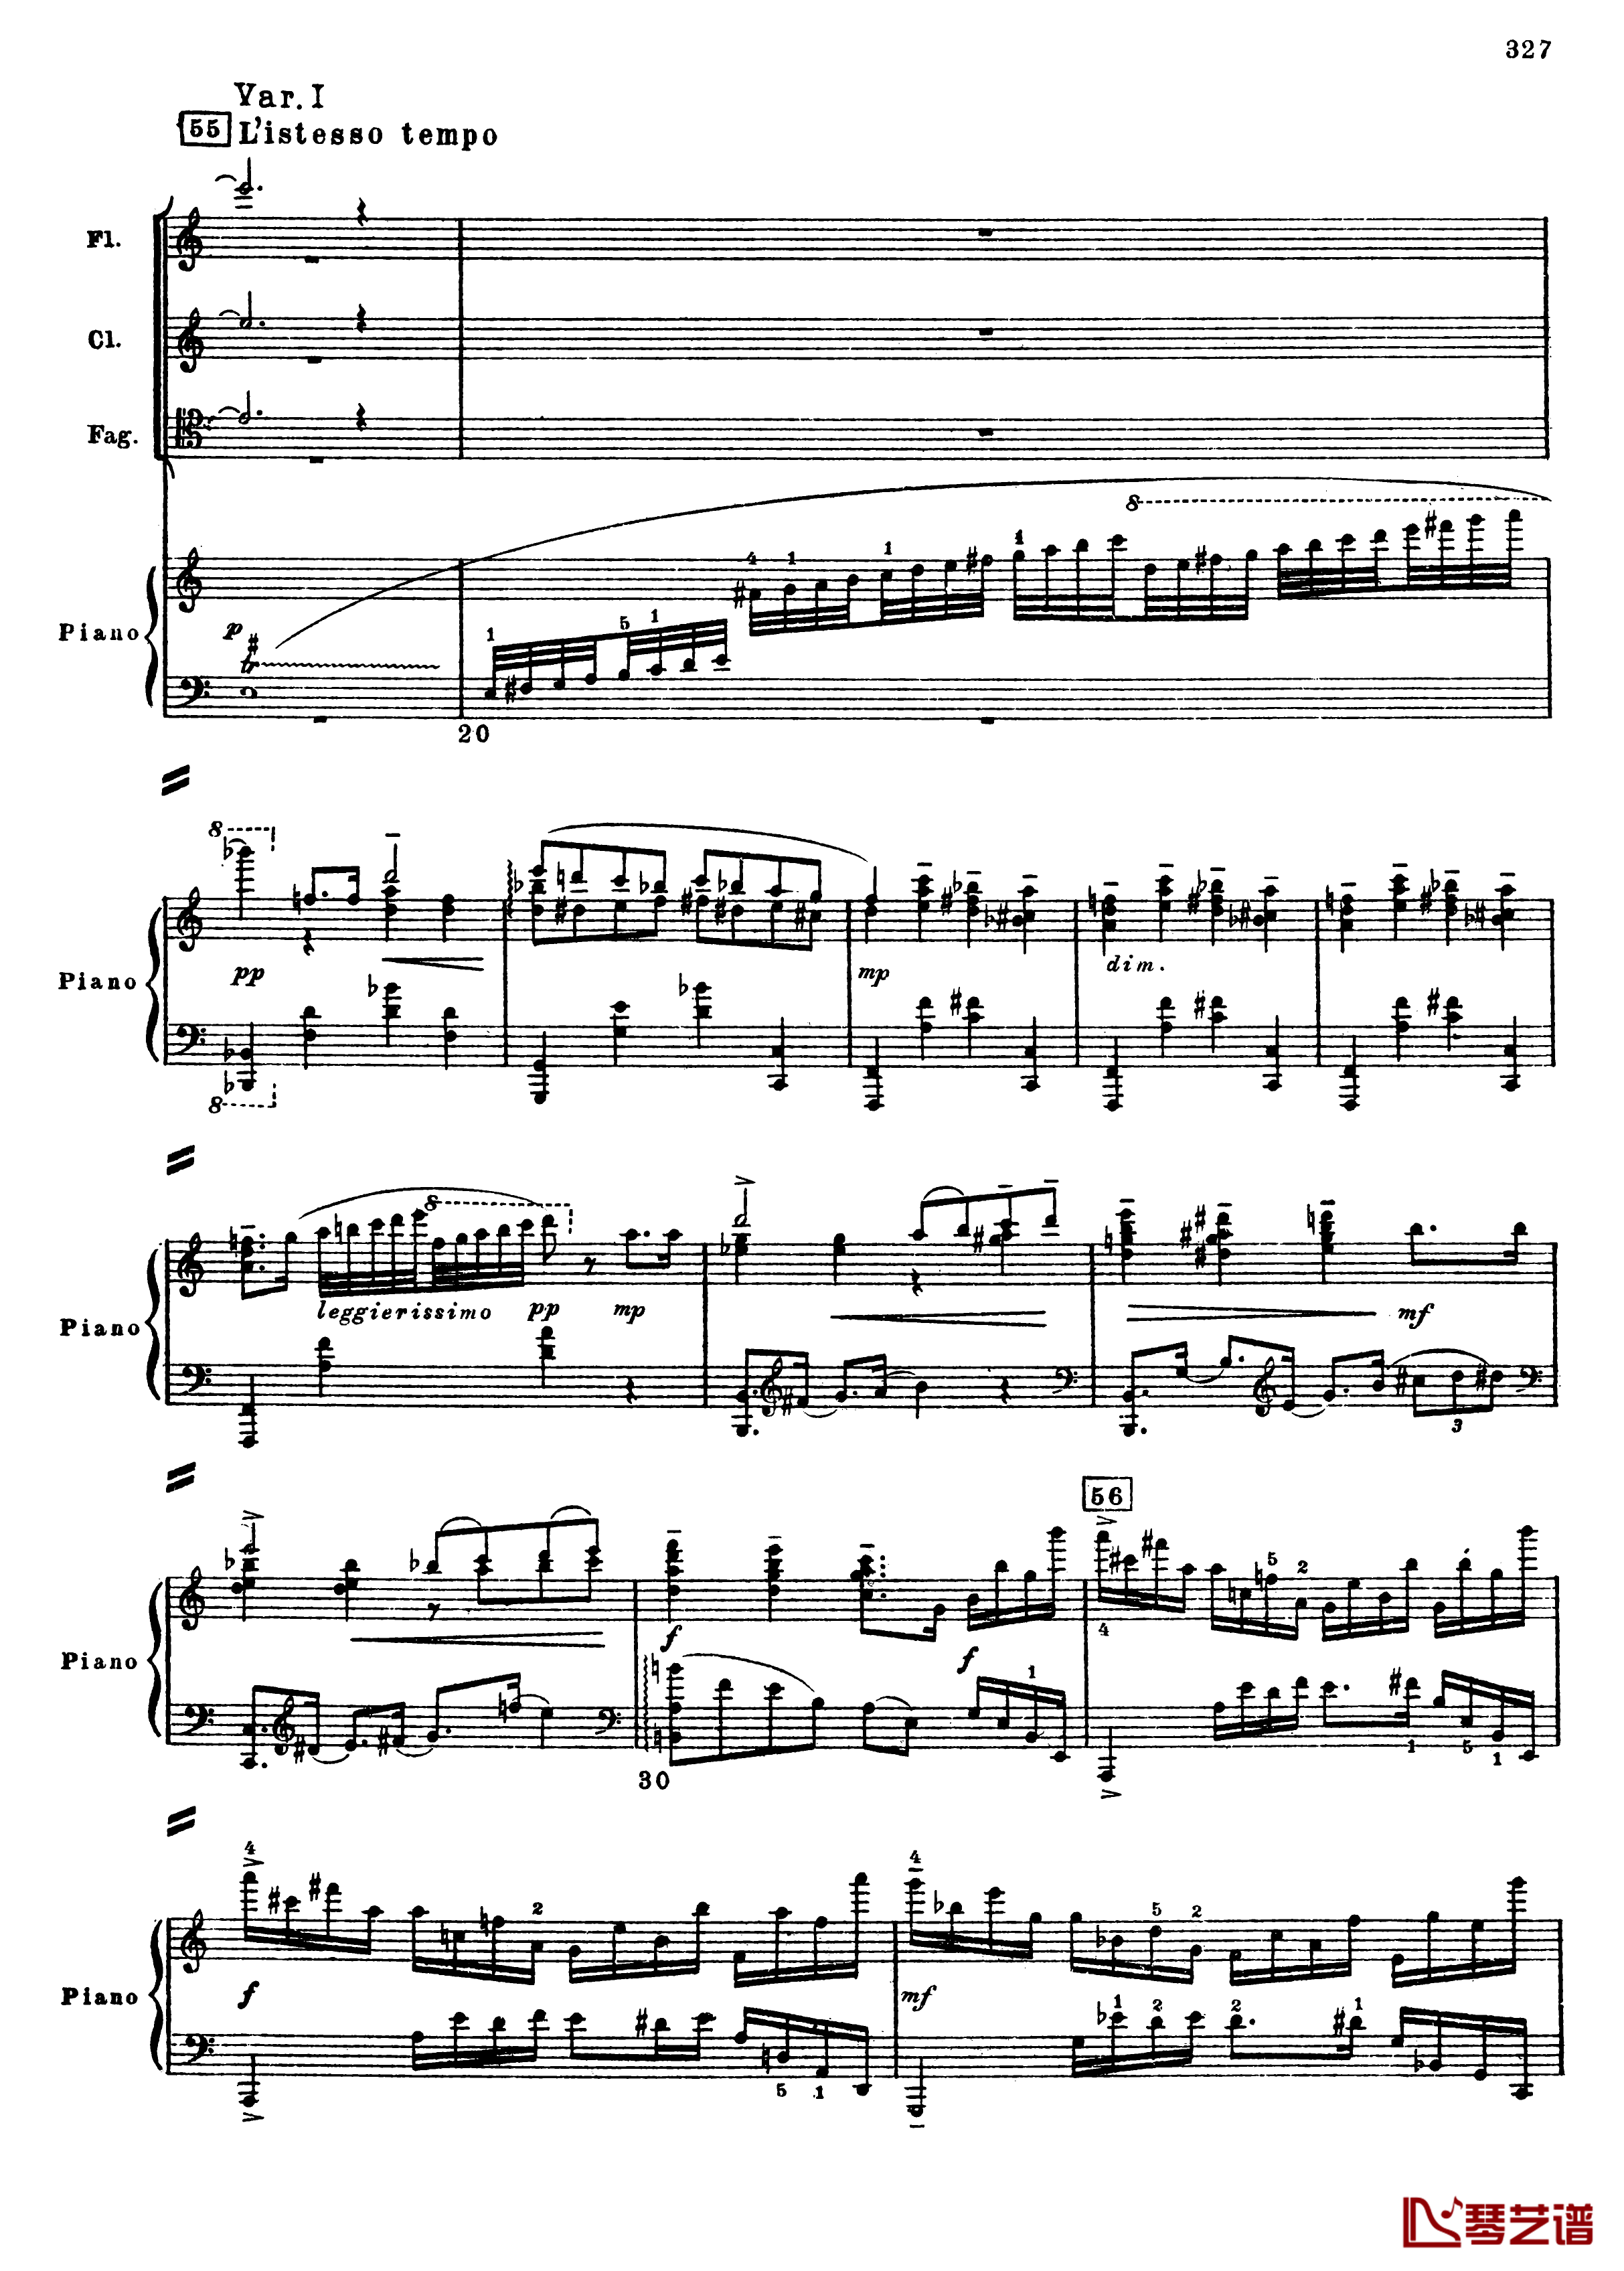 普罗科菲耶夫第三钢琴协奏曲钢琴谱-总谱-普罗科非耶夫59